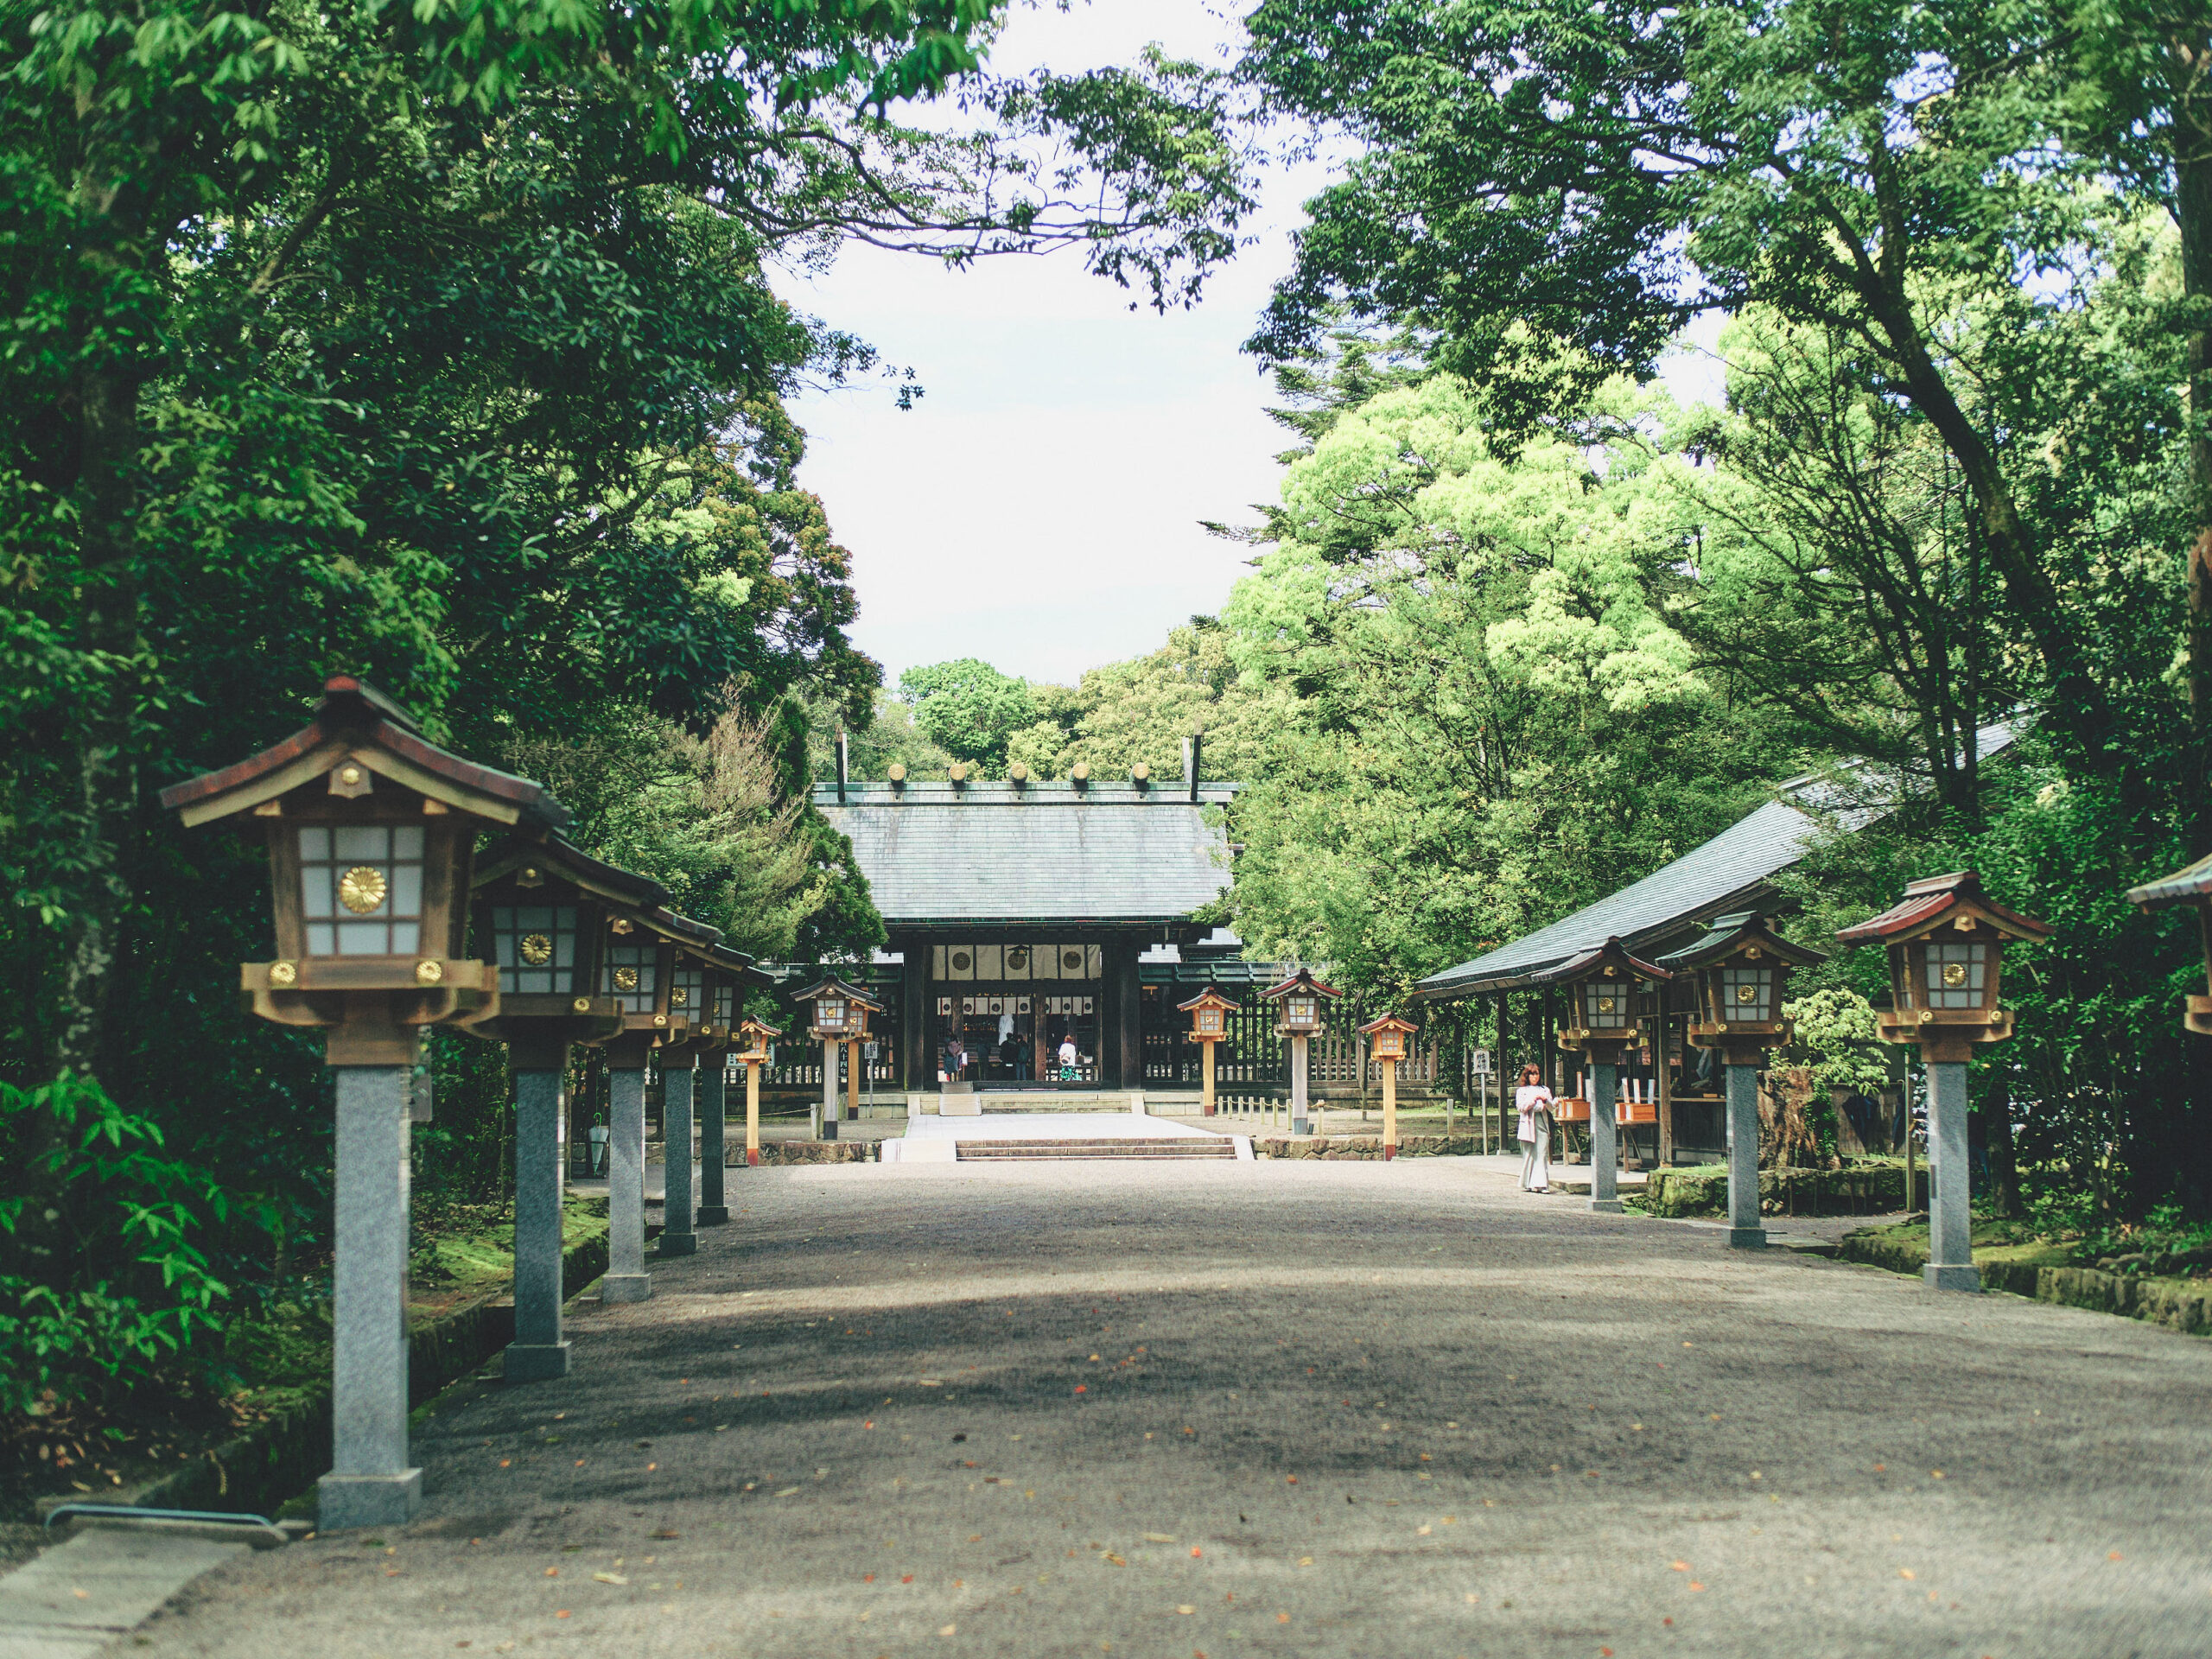 宮崎市の最後は、宮崎神宮へ。青島神社にも行きたかったけれど、まだ、宮崎神宮には行ったことがなかったので。